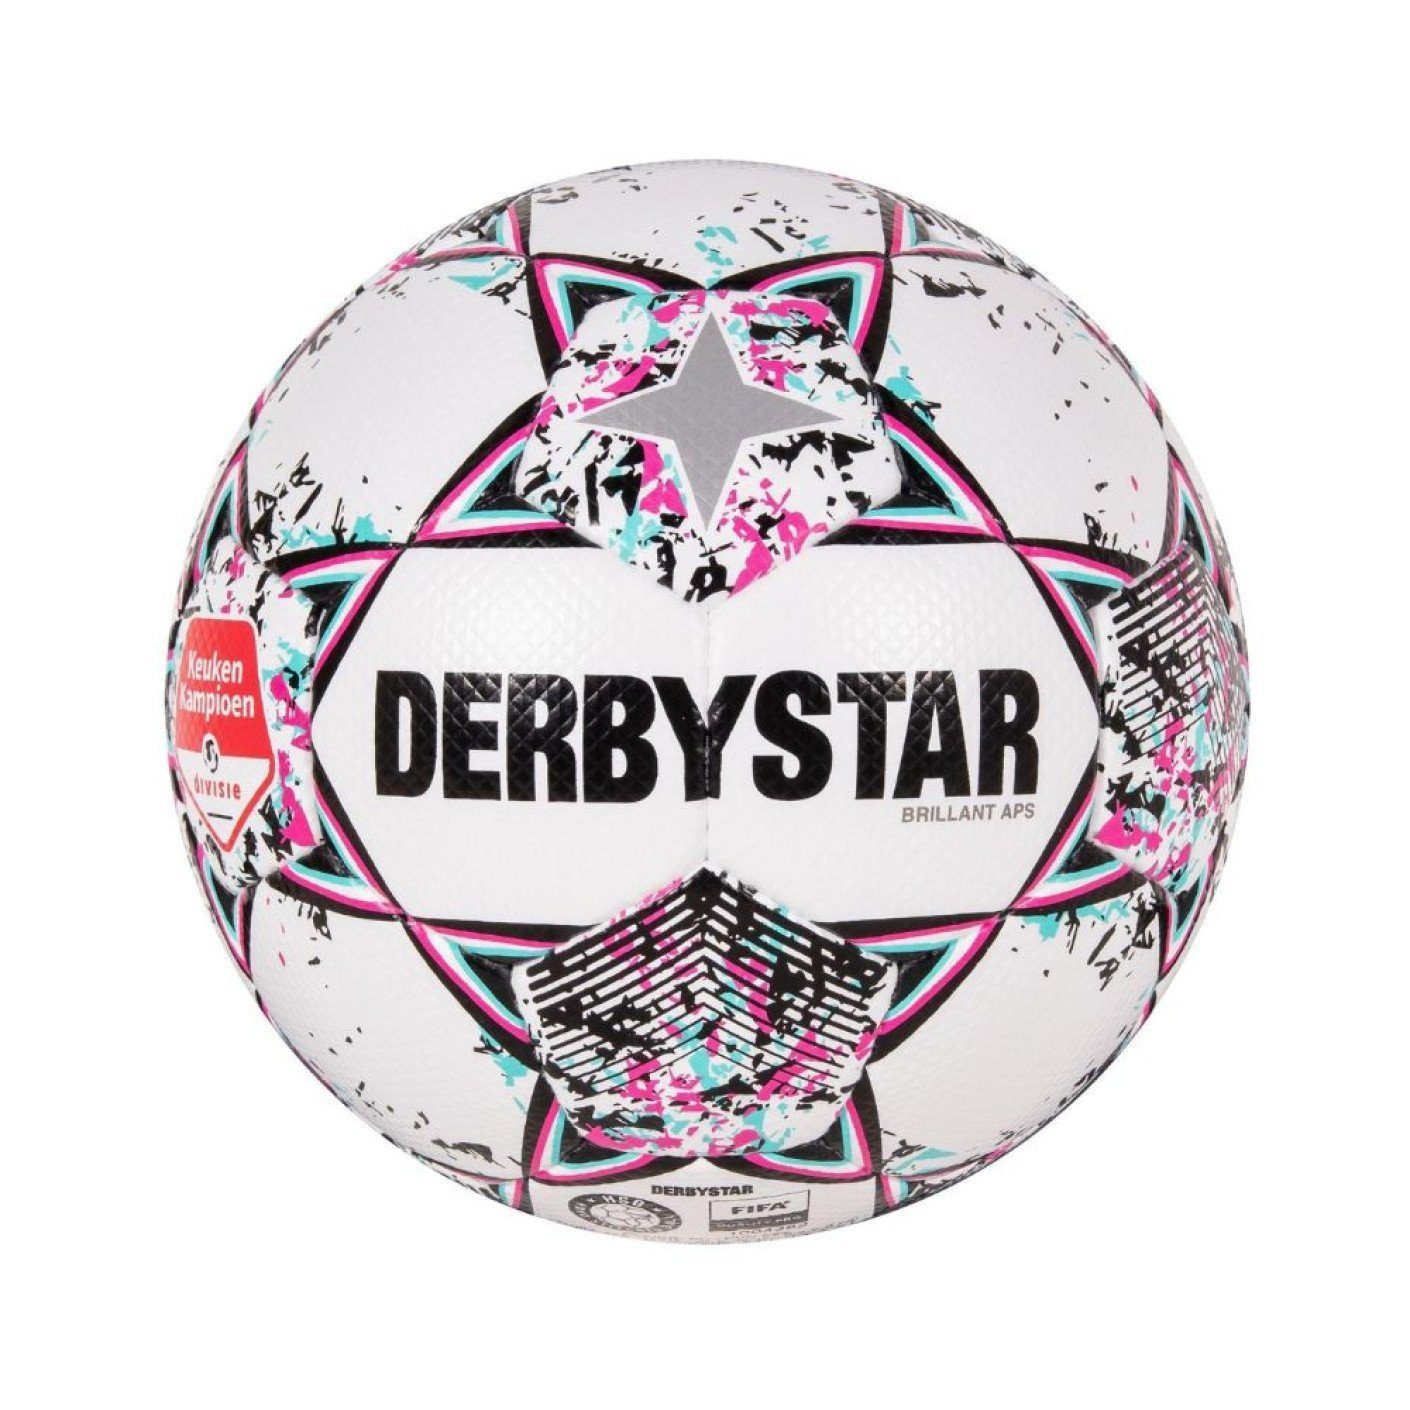 Derbystar Fußball Brillant APS KEUKEN Spielball Erendivise) (holländische - / Matchball